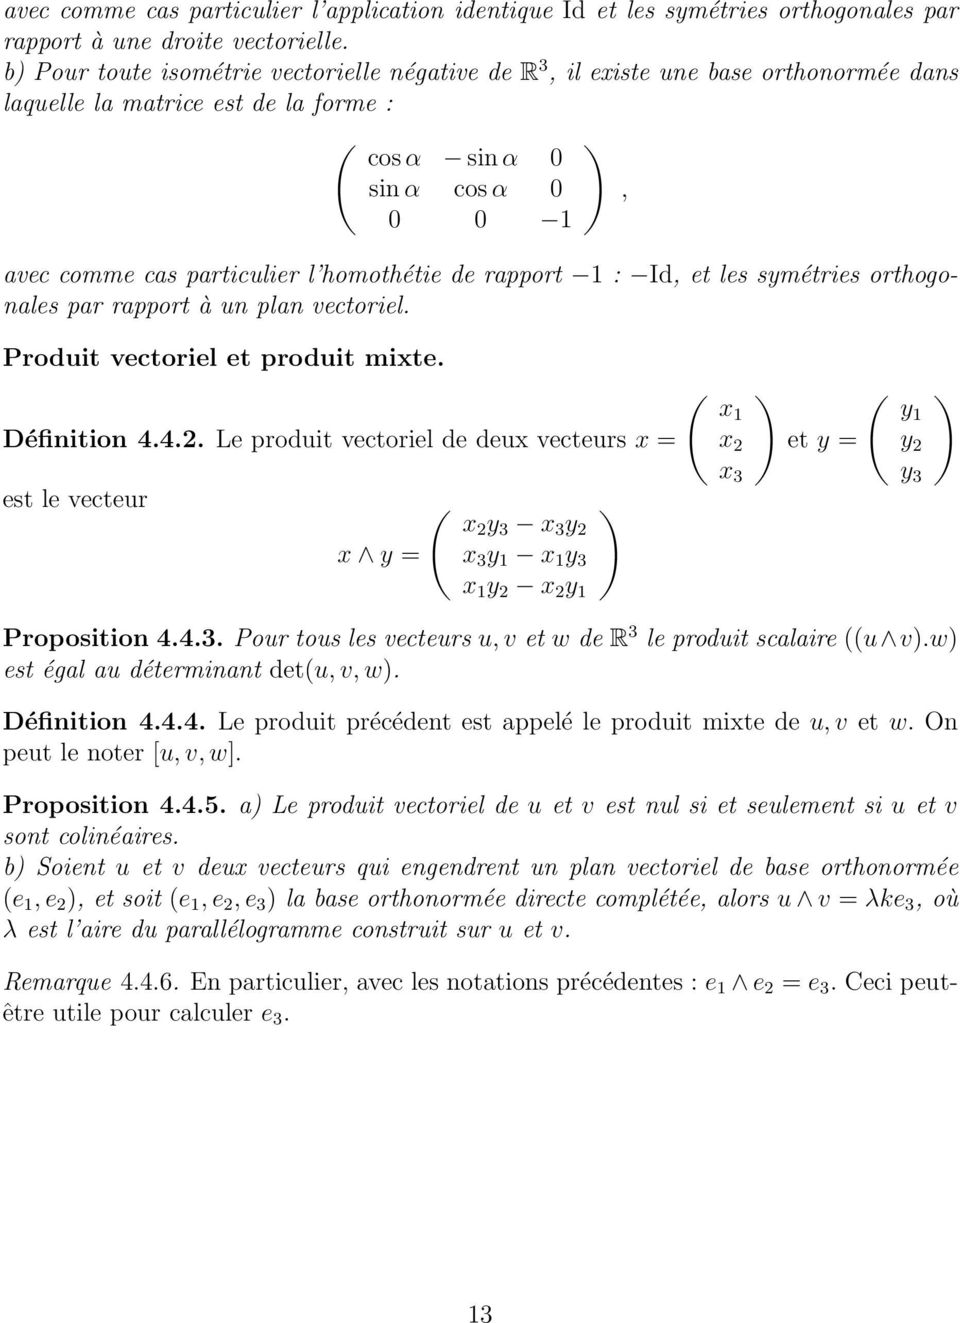 plan vectoriel, Produit vectoriel et produit mixte Définition 442 Le produit vectoriel de deux vecteurs x = est le vecteur Ö x2 y 3 x 3 y 2 Ö x1 x 2 x 3 et y = Ö y1 y 2 y 3 x y = x 3 y 1 x 1 y 3 x 1